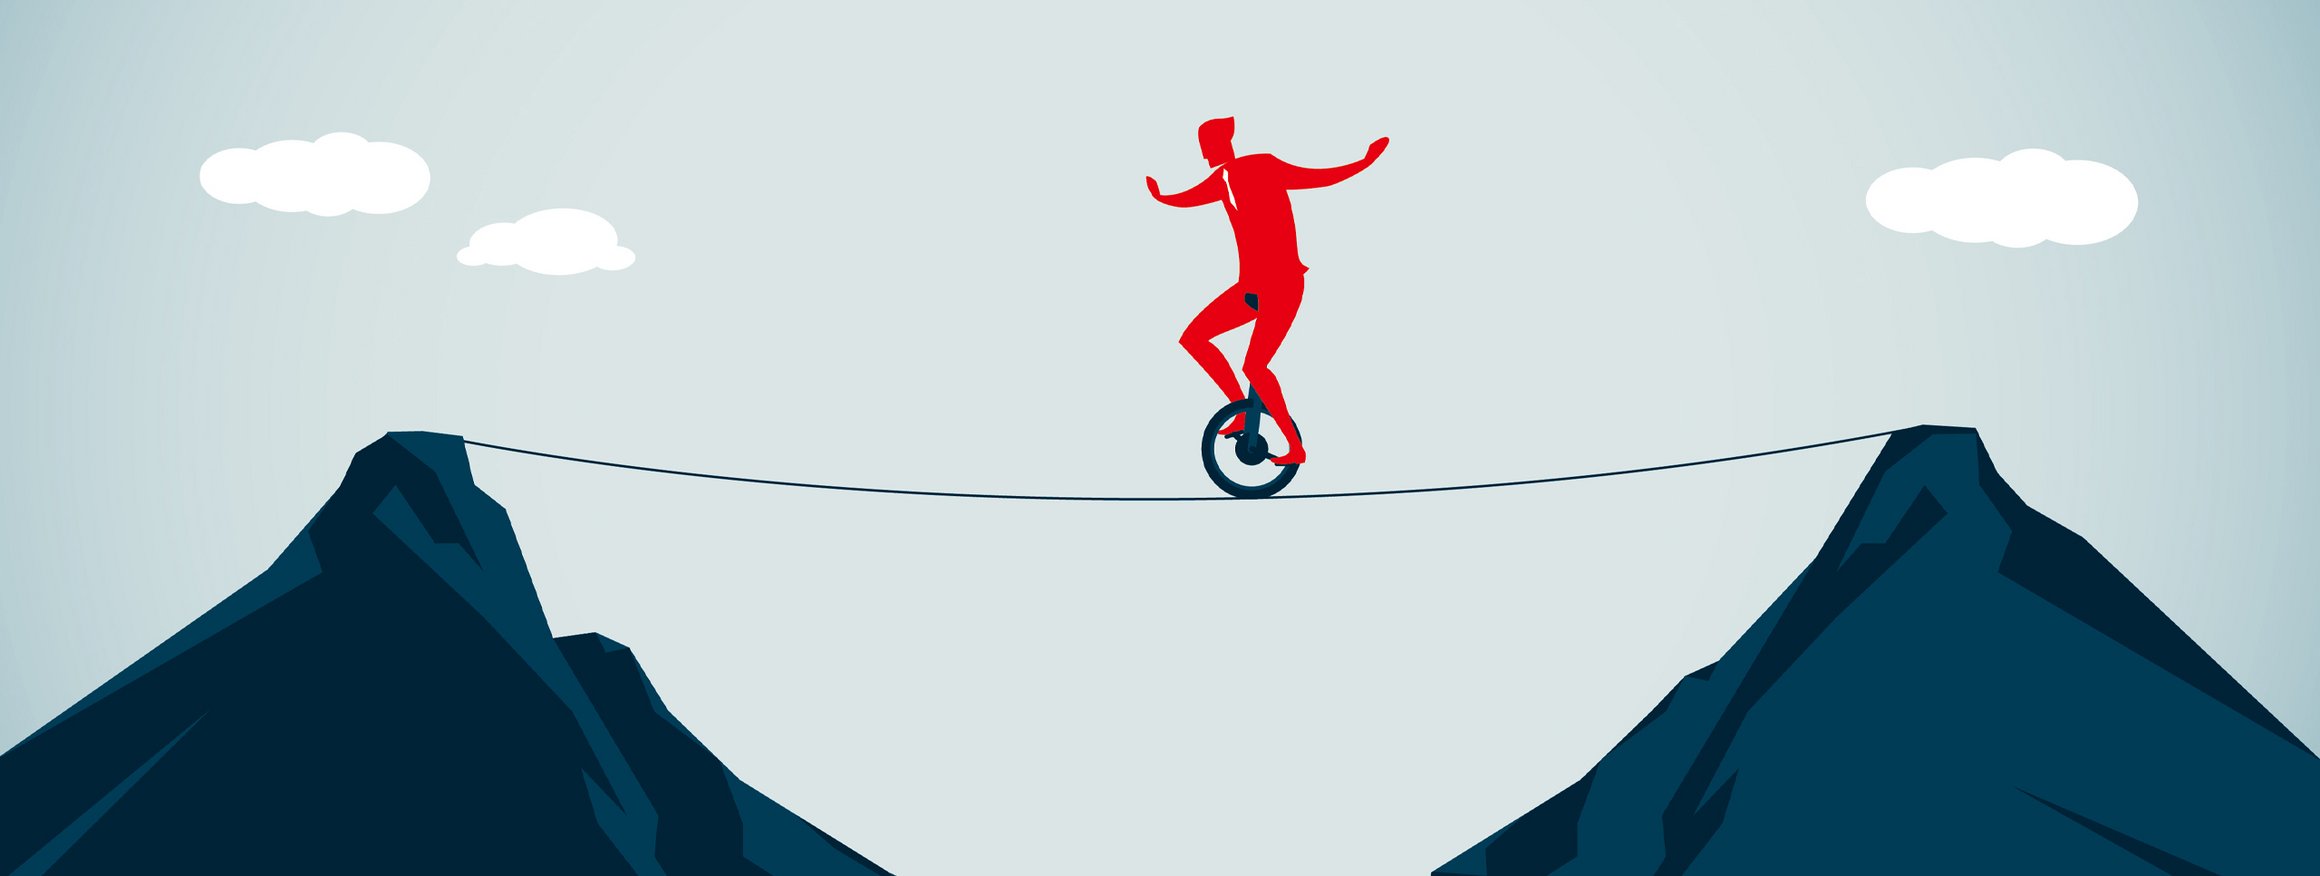 Die Illustration zeigt einen roten Mann im Anzug auf einem Einrad, der riskant auf einem Seil von einer Bergspitze zur anderen balanciert